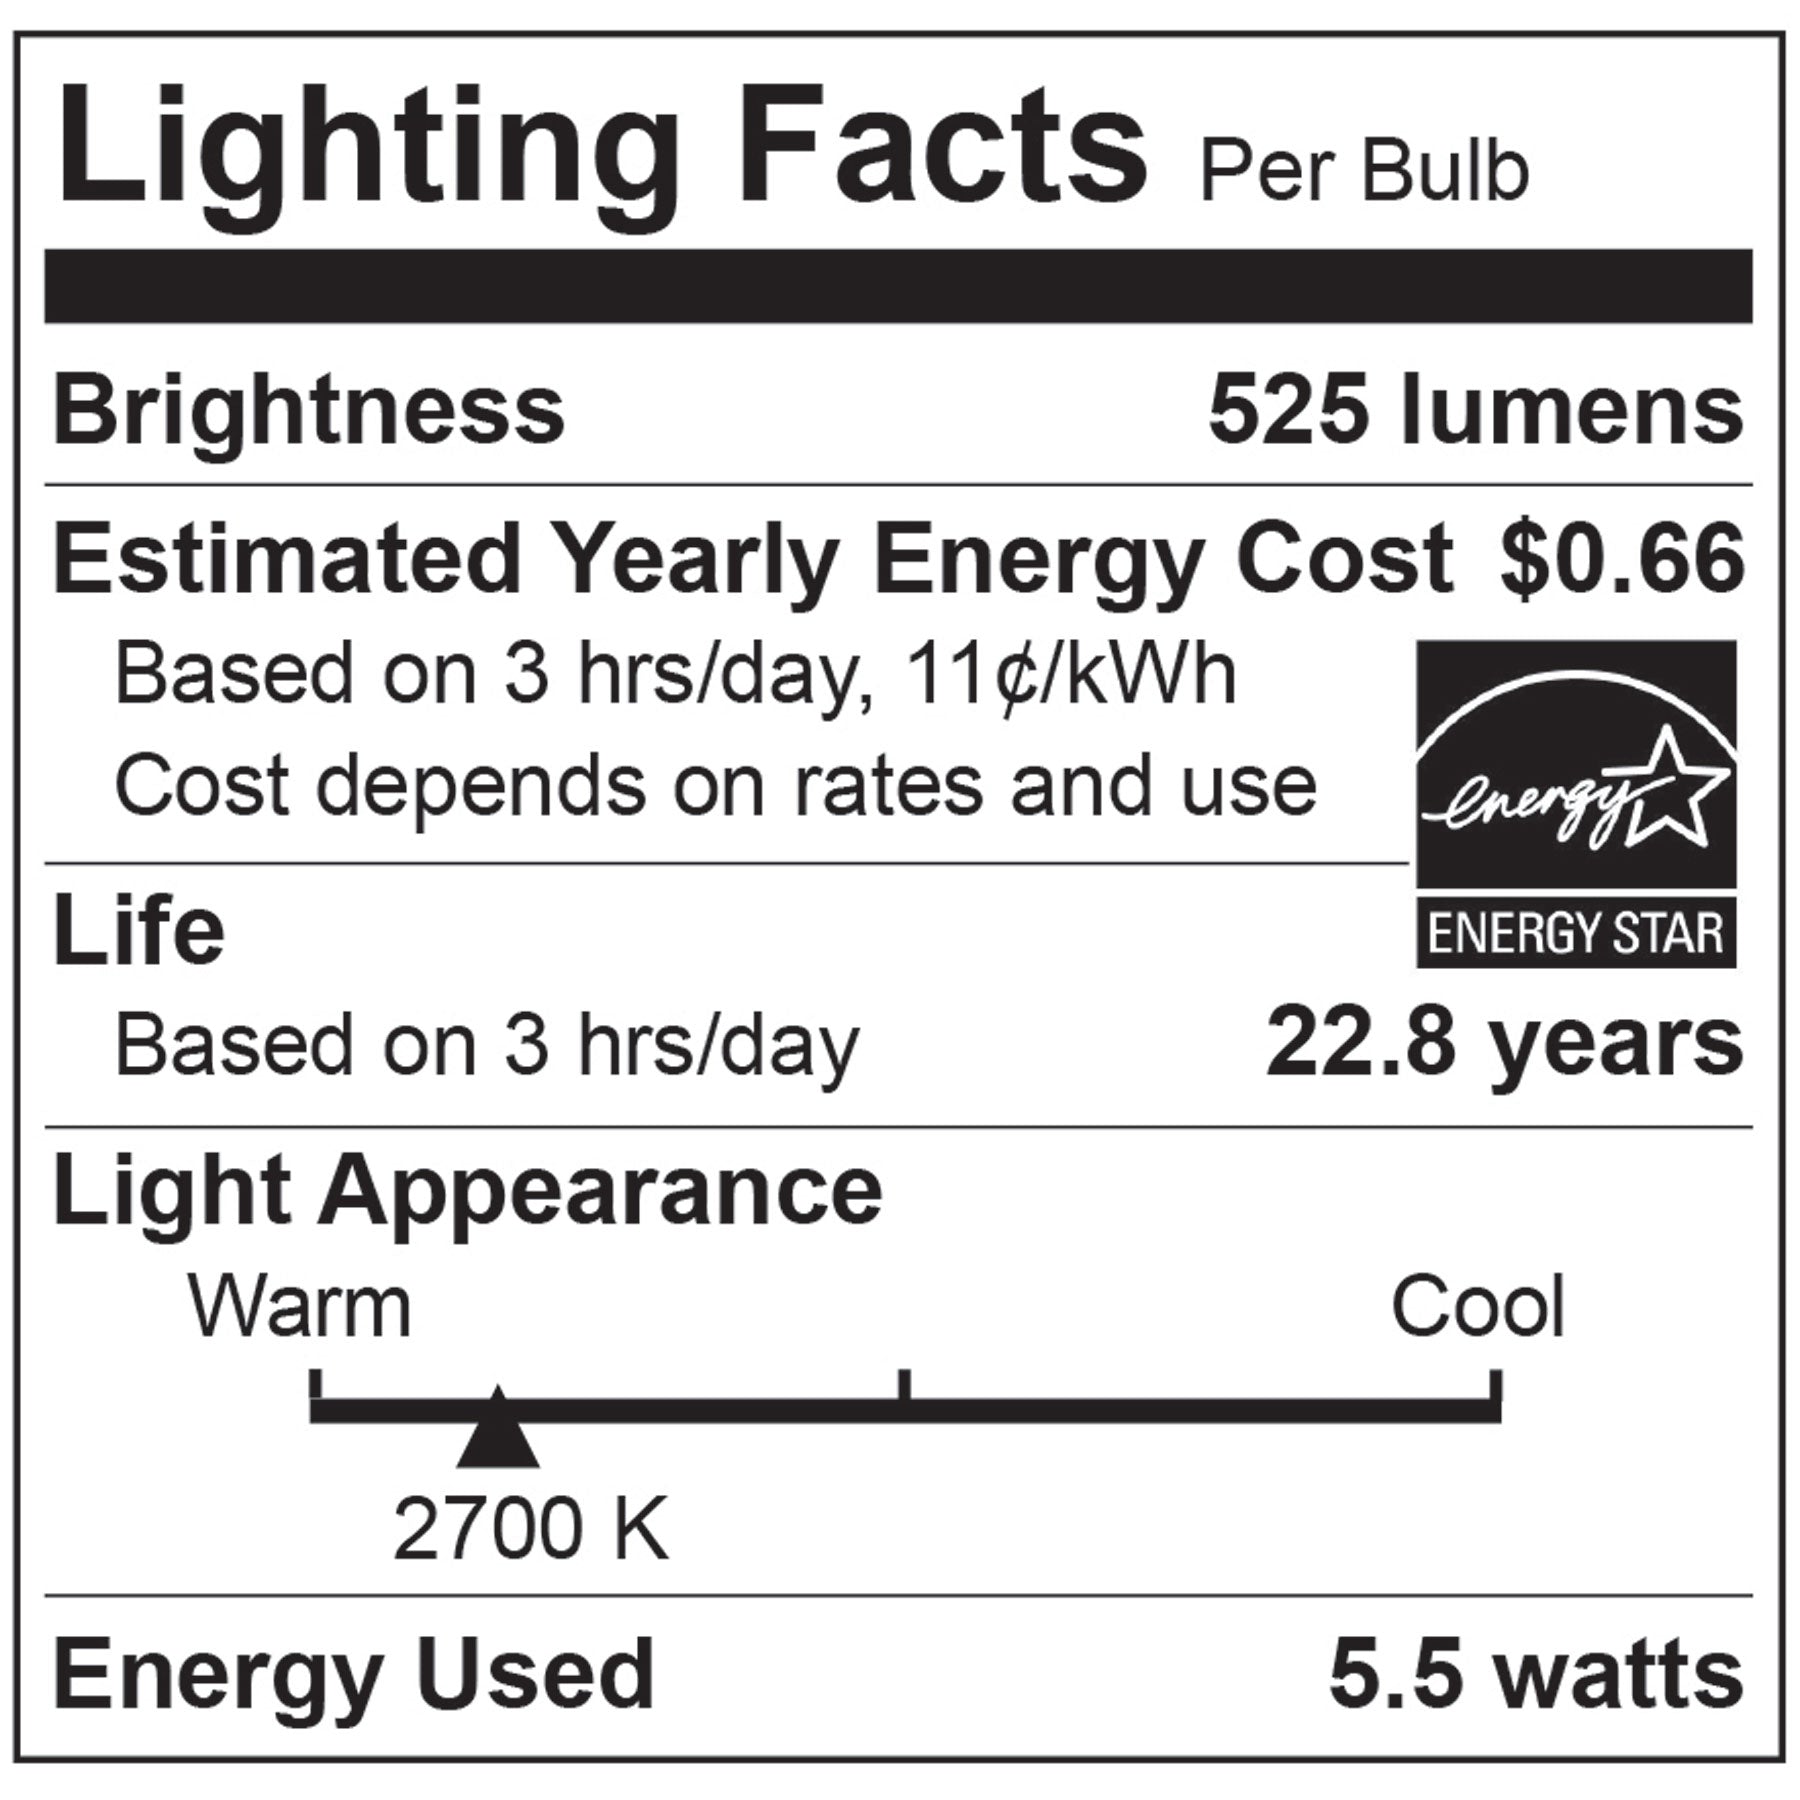 50-Watt Equivalent BR20 E26 LED Light Bulbs. Energy Star / CEC / JA8